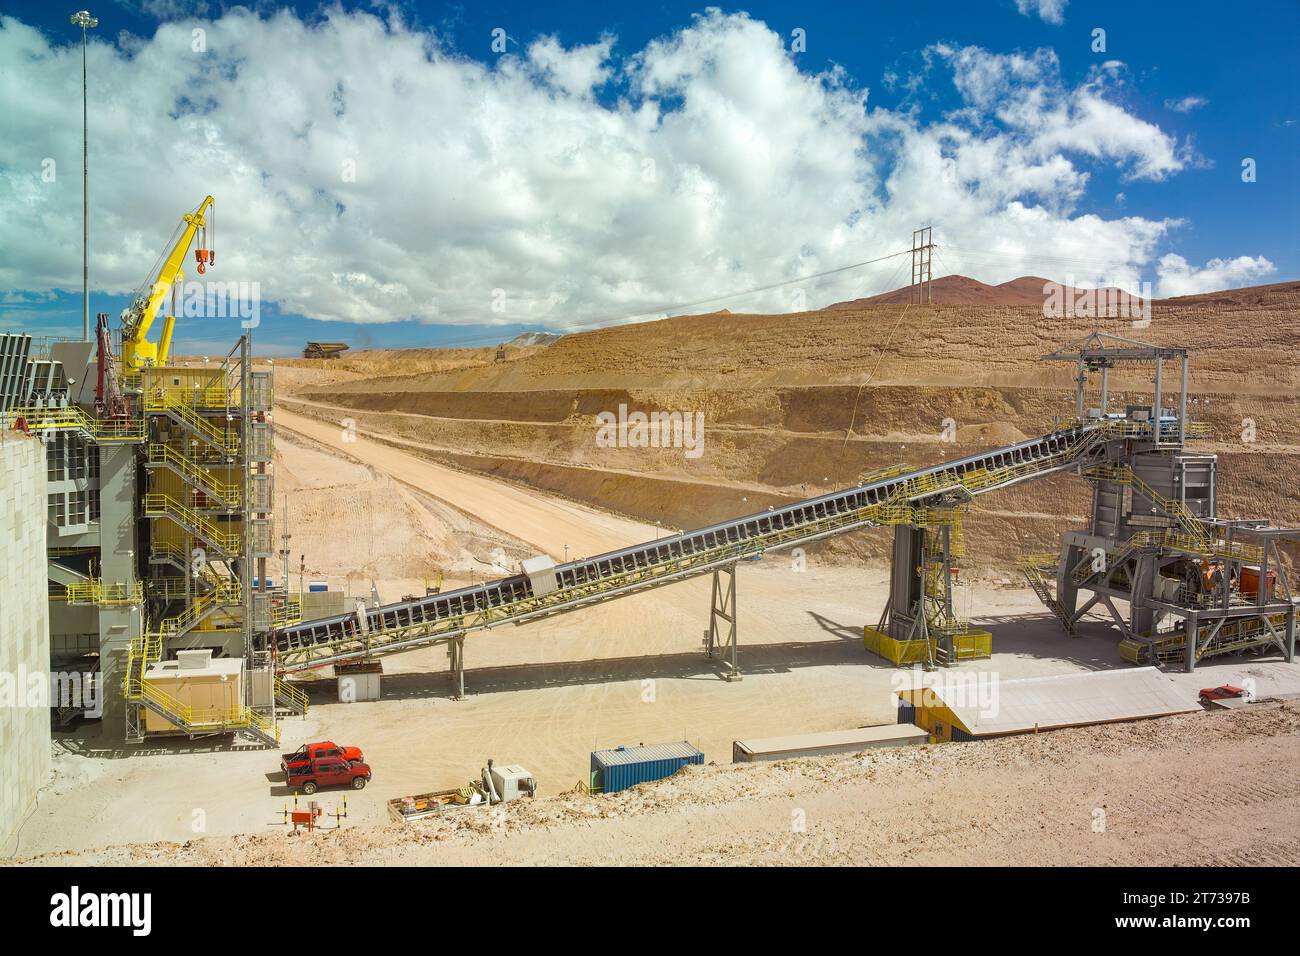 Concasseur de roche et bande transporteuse à l'usine d'une mine de cuivre dans l'altiplano du désert d'Atacama dans le nord du Chili. Banque D'Images